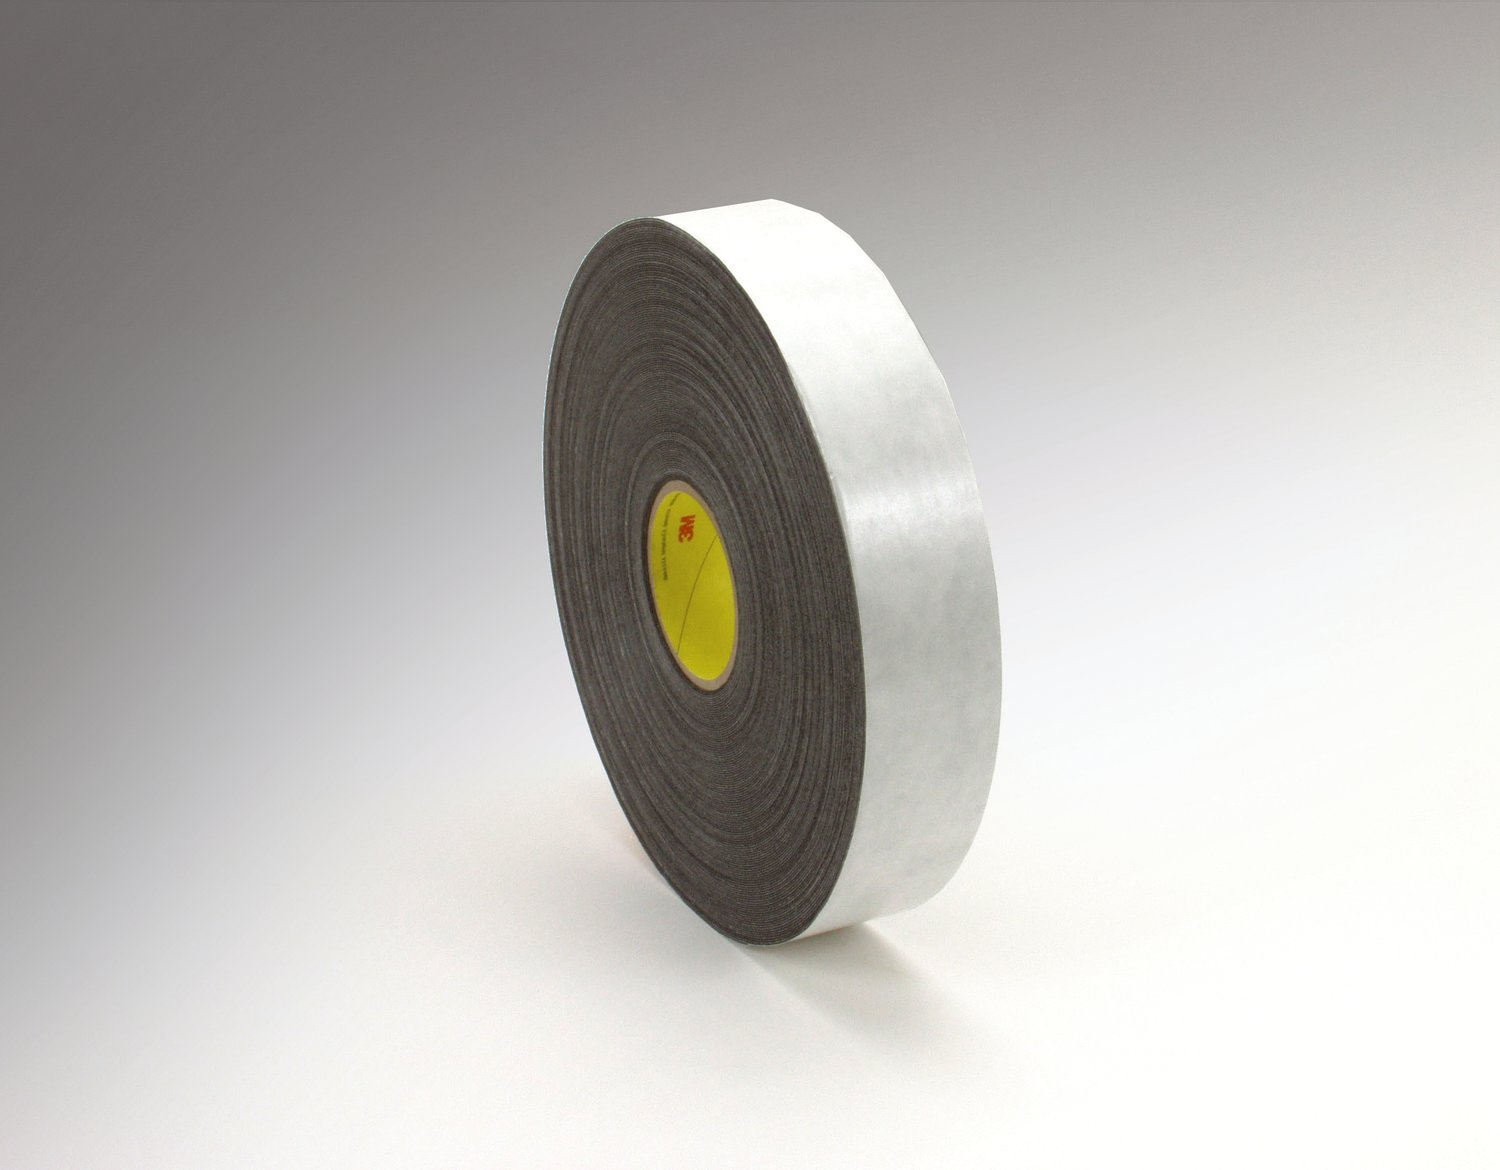 7000123701 - 3M Double Coated Polyethylene Foam Tape 4462, Black, 3/4 in x 72 yd, 31
mil, 12 rolls per case